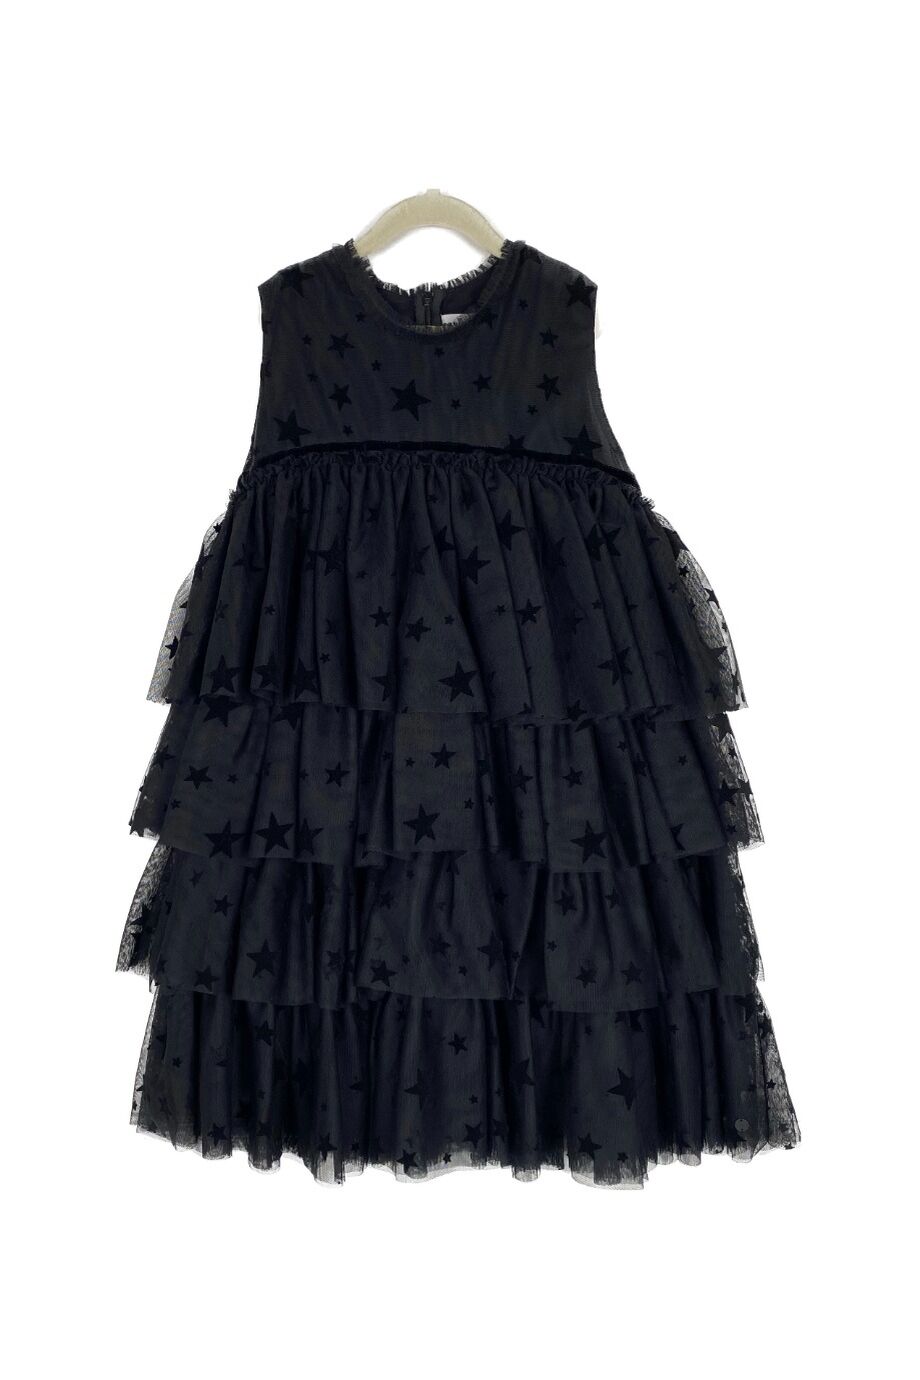 image 1 Детское платье чёрного цвета со звездами